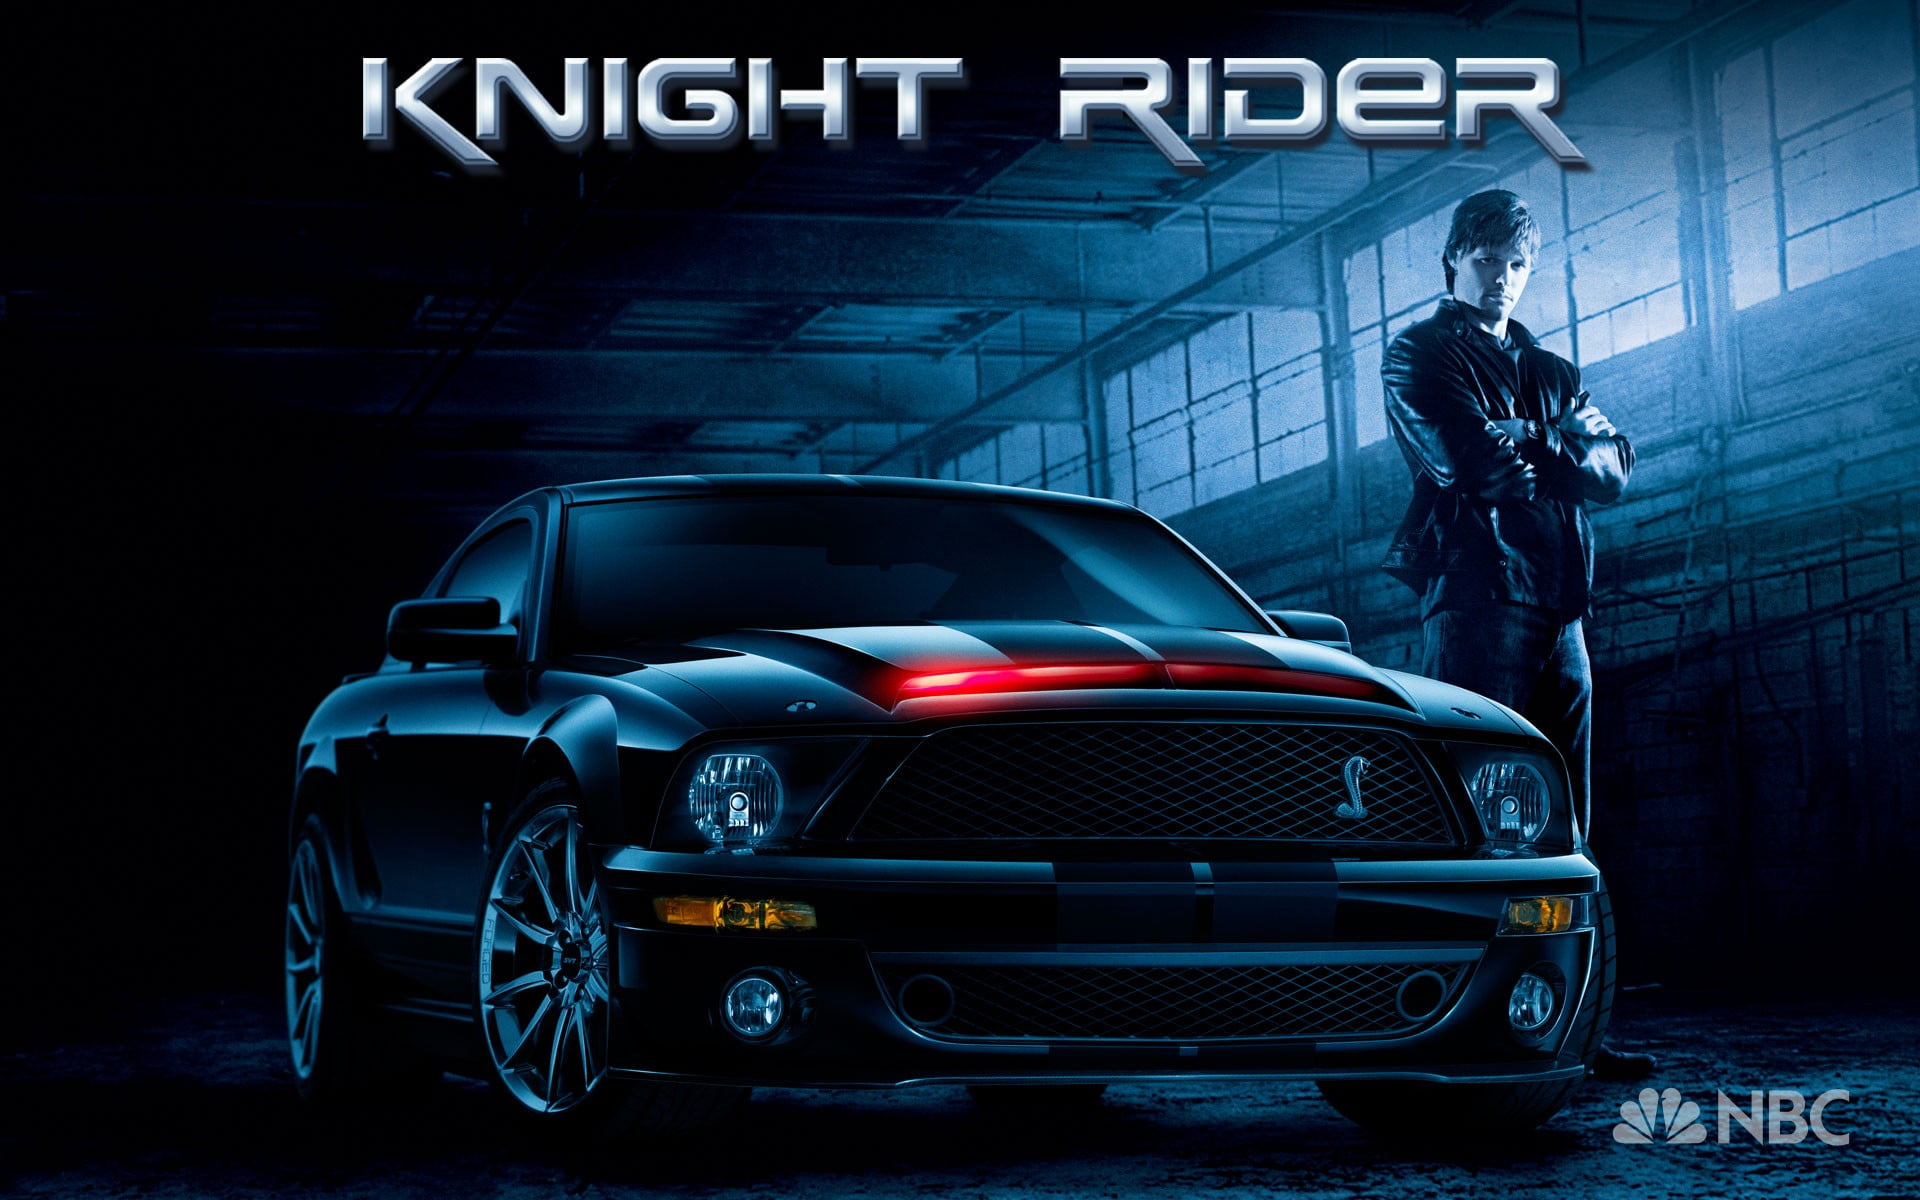 Knight Rider digital wallpaper, Ford Mustang, car, motor vehicle